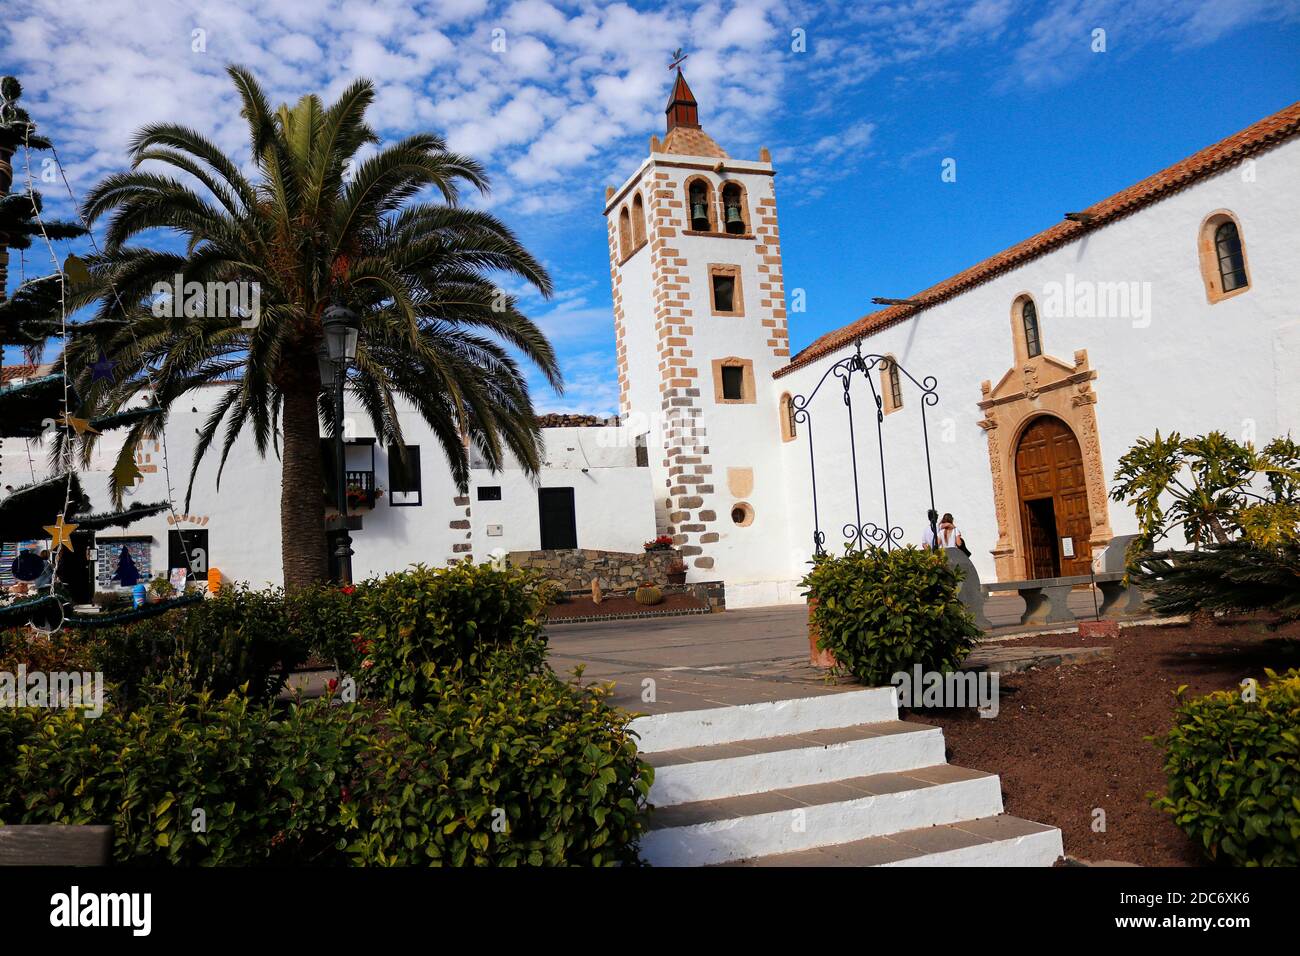 Impressionen: Iglesia de Santa Maria, Betancuria, Fuerteventura, Kanarische Inseln, Spanien/ Fuerteventura, Canary Islands, Spain  (nur fuer redaktion Stock Photo